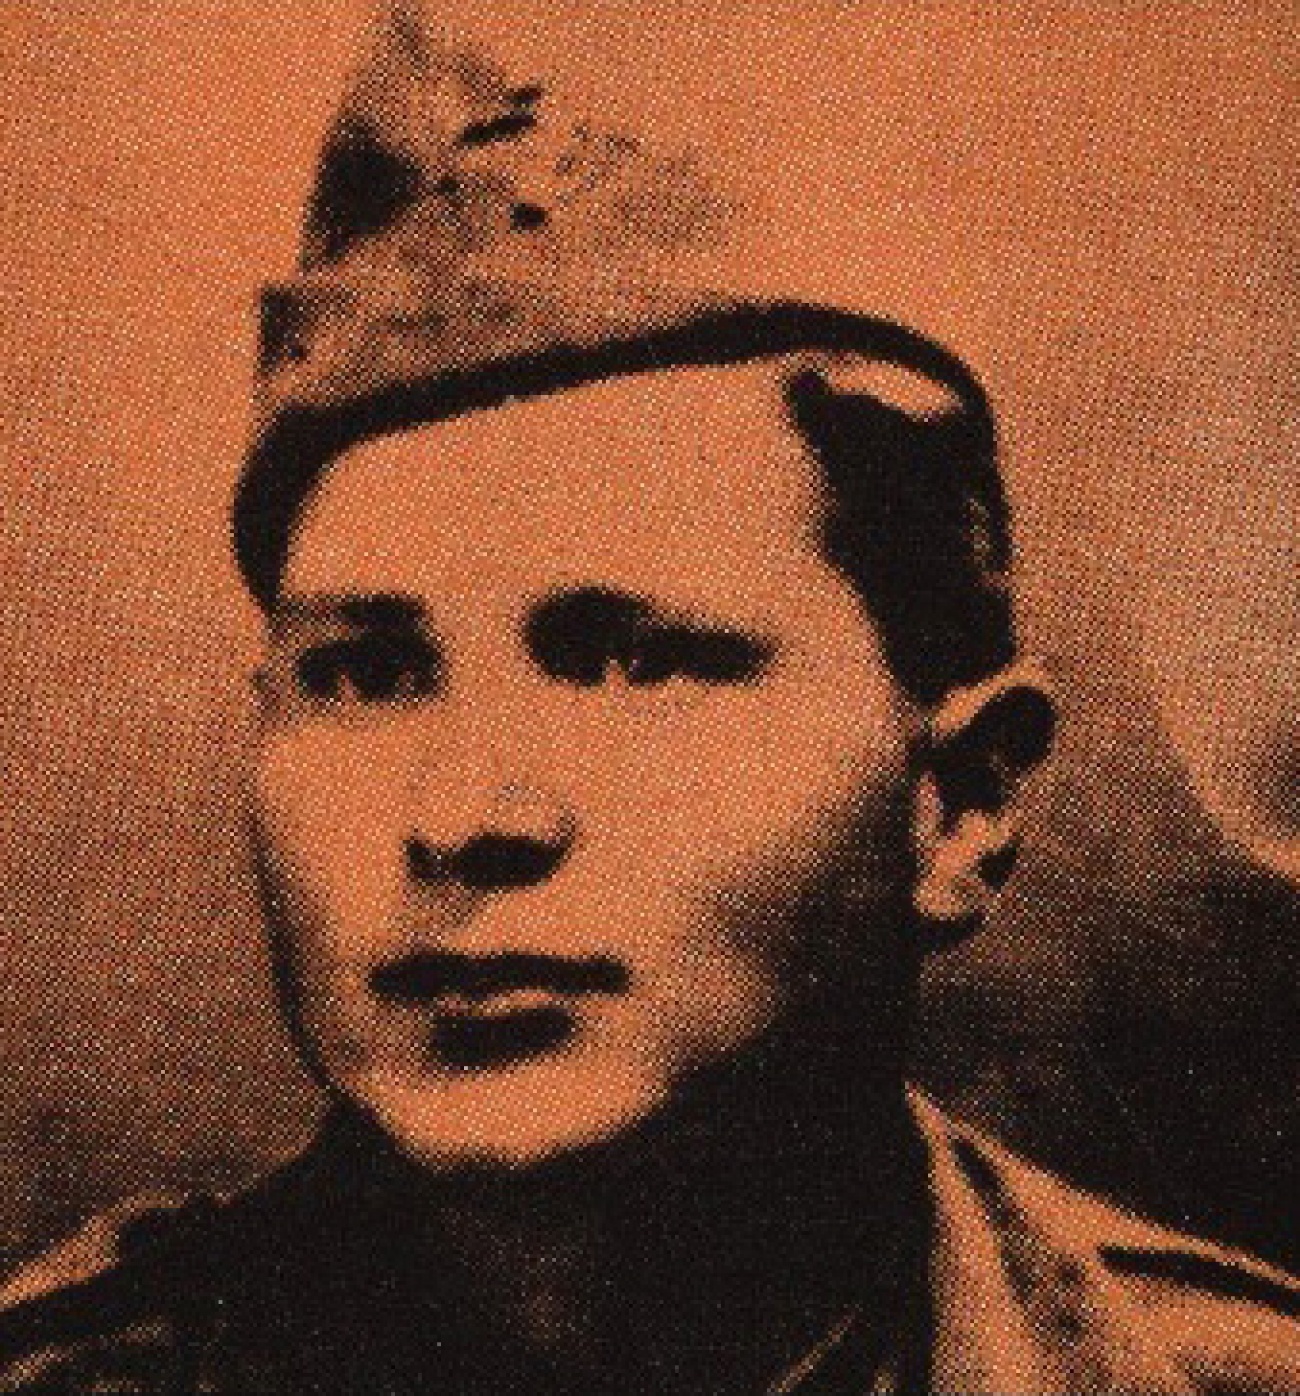 António Gervásio em 1948, quando prestava serviço militar em Évora